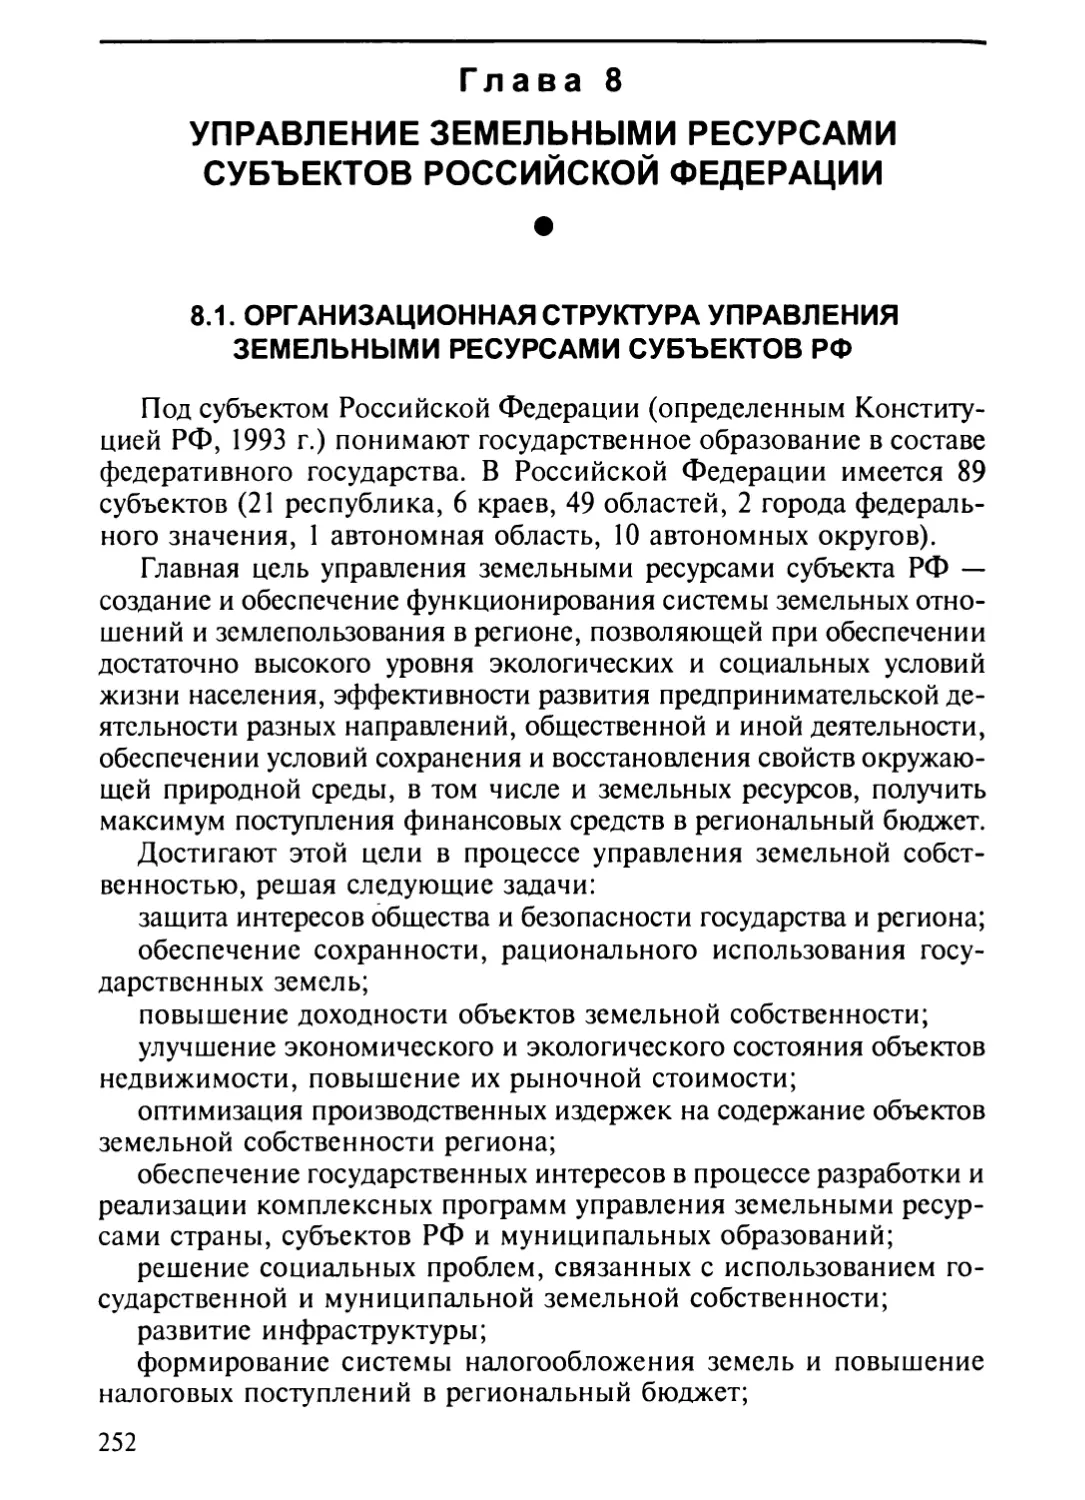 Глава 8. Управление земельными ресурсами субъектов Российской Федерации